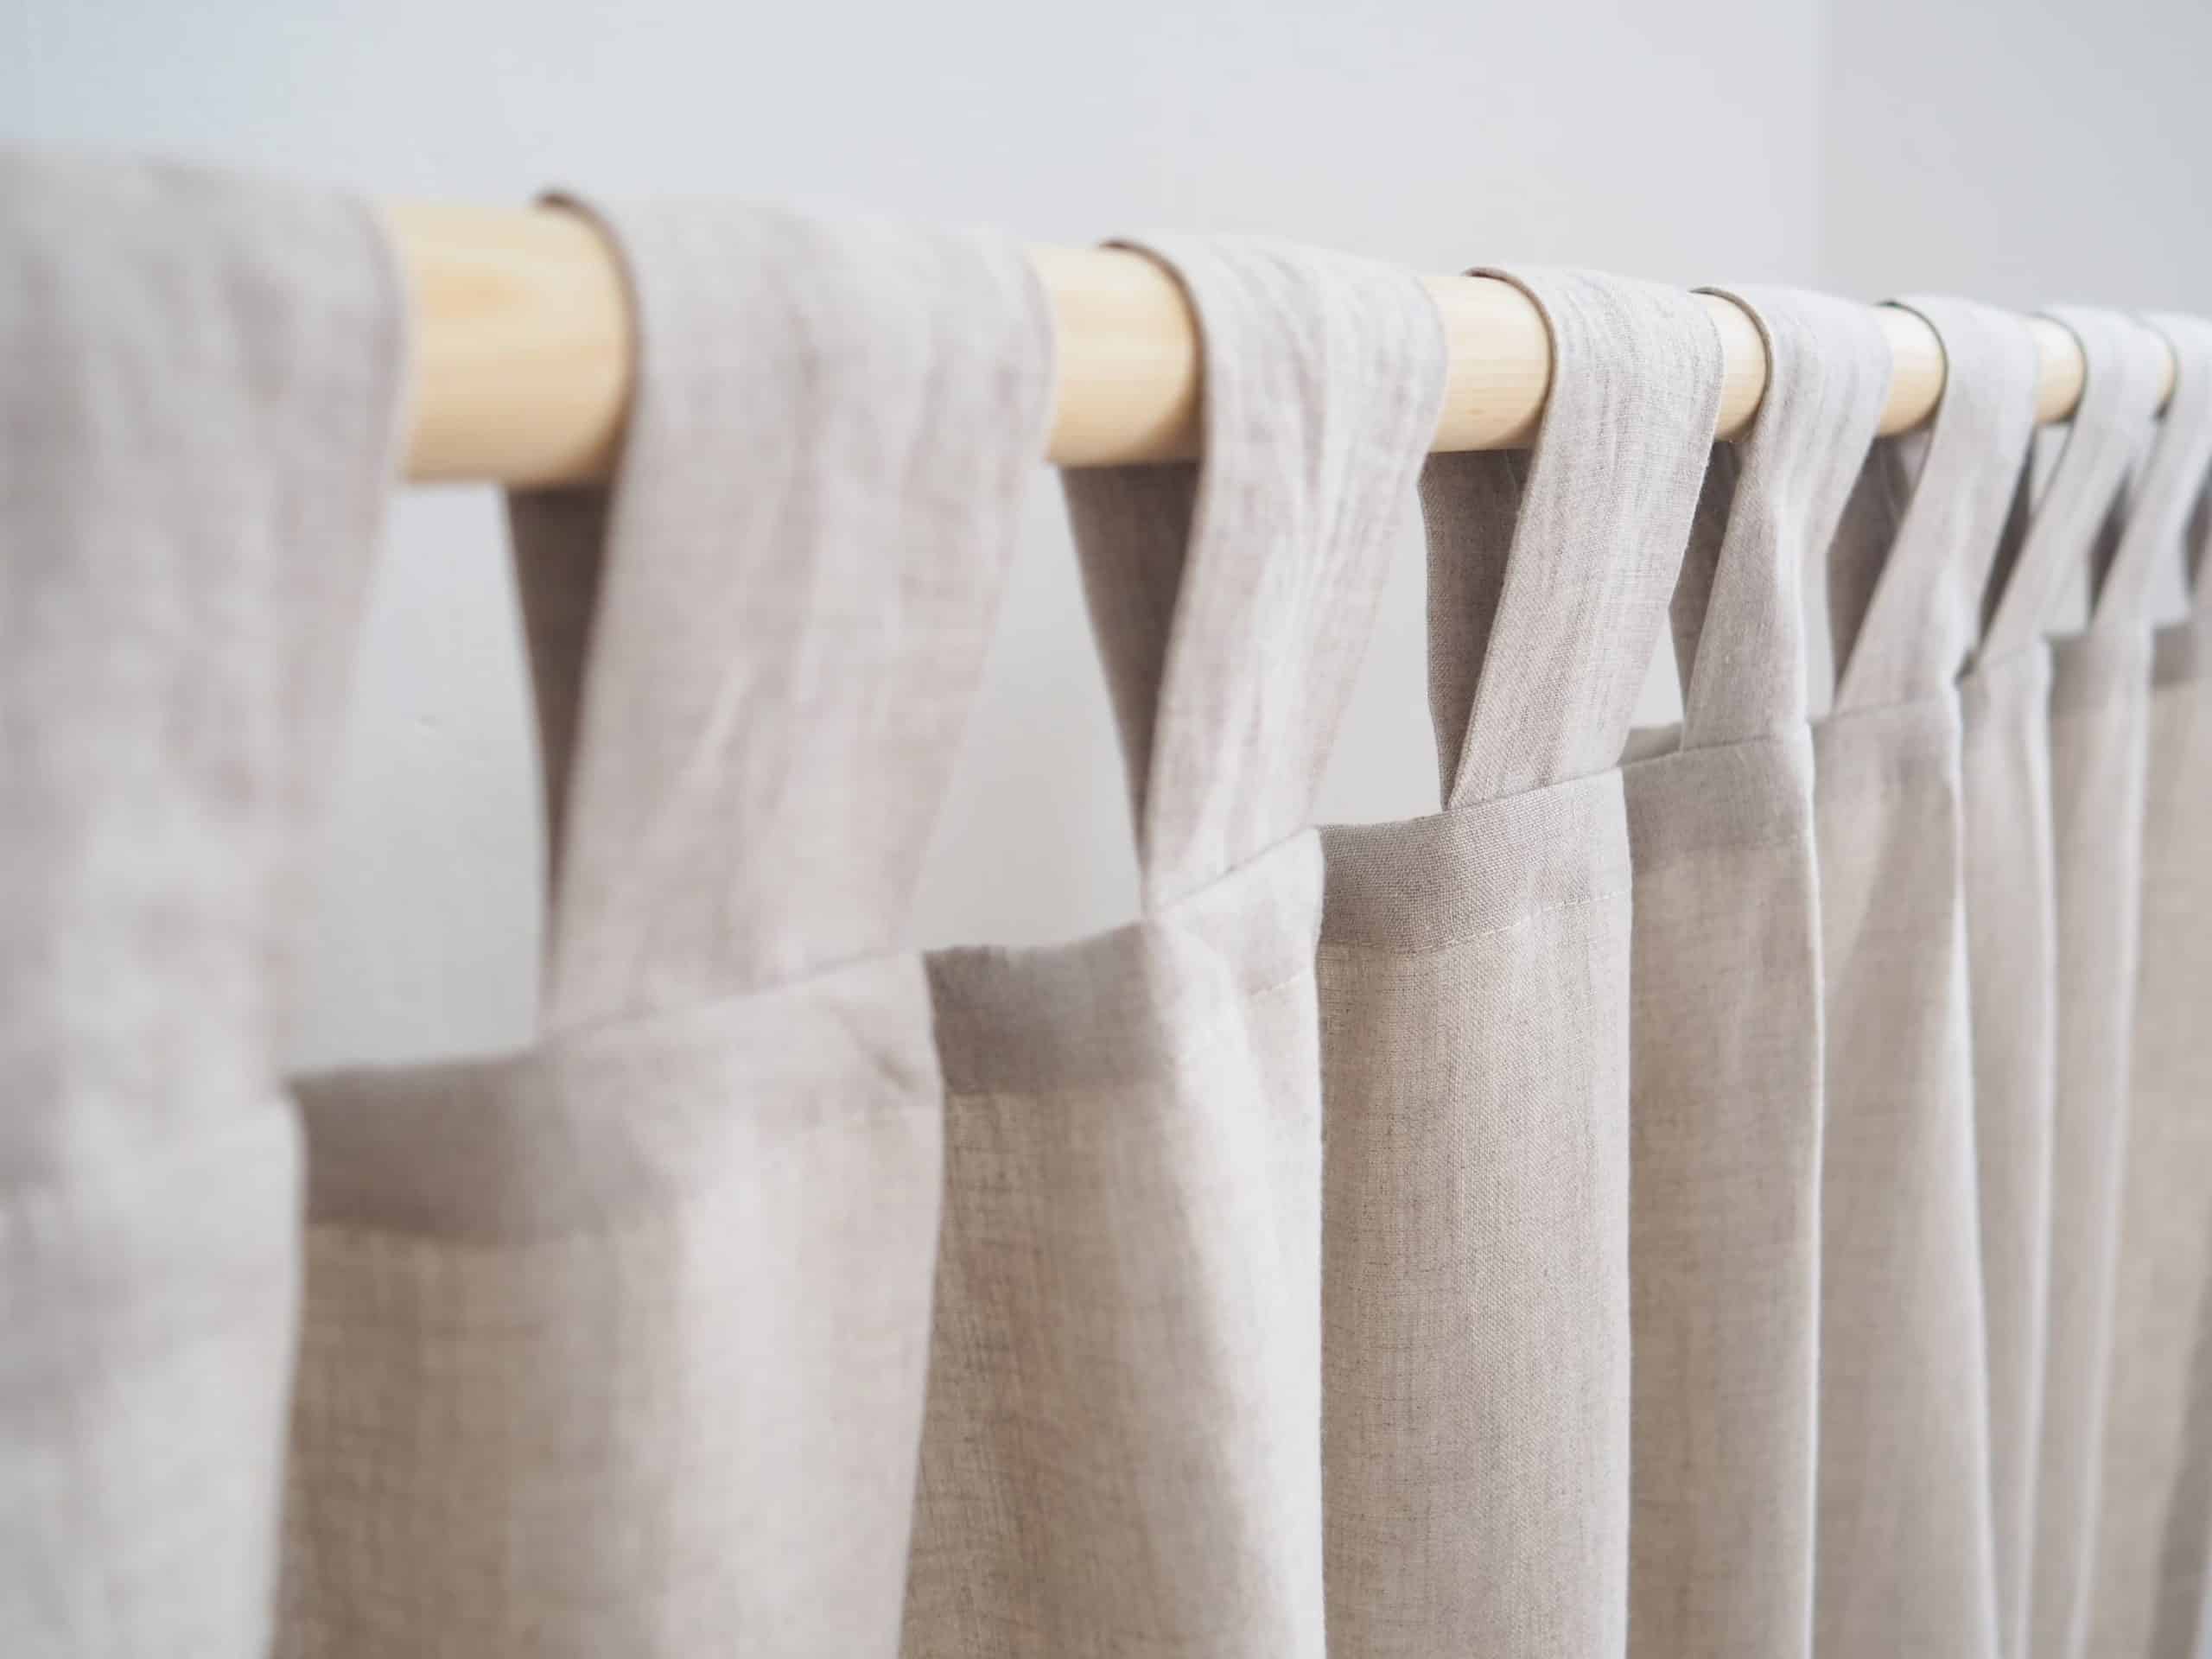 Kiểu may rèm vải phổ biến và đẹp nhất hiện nay – may móc